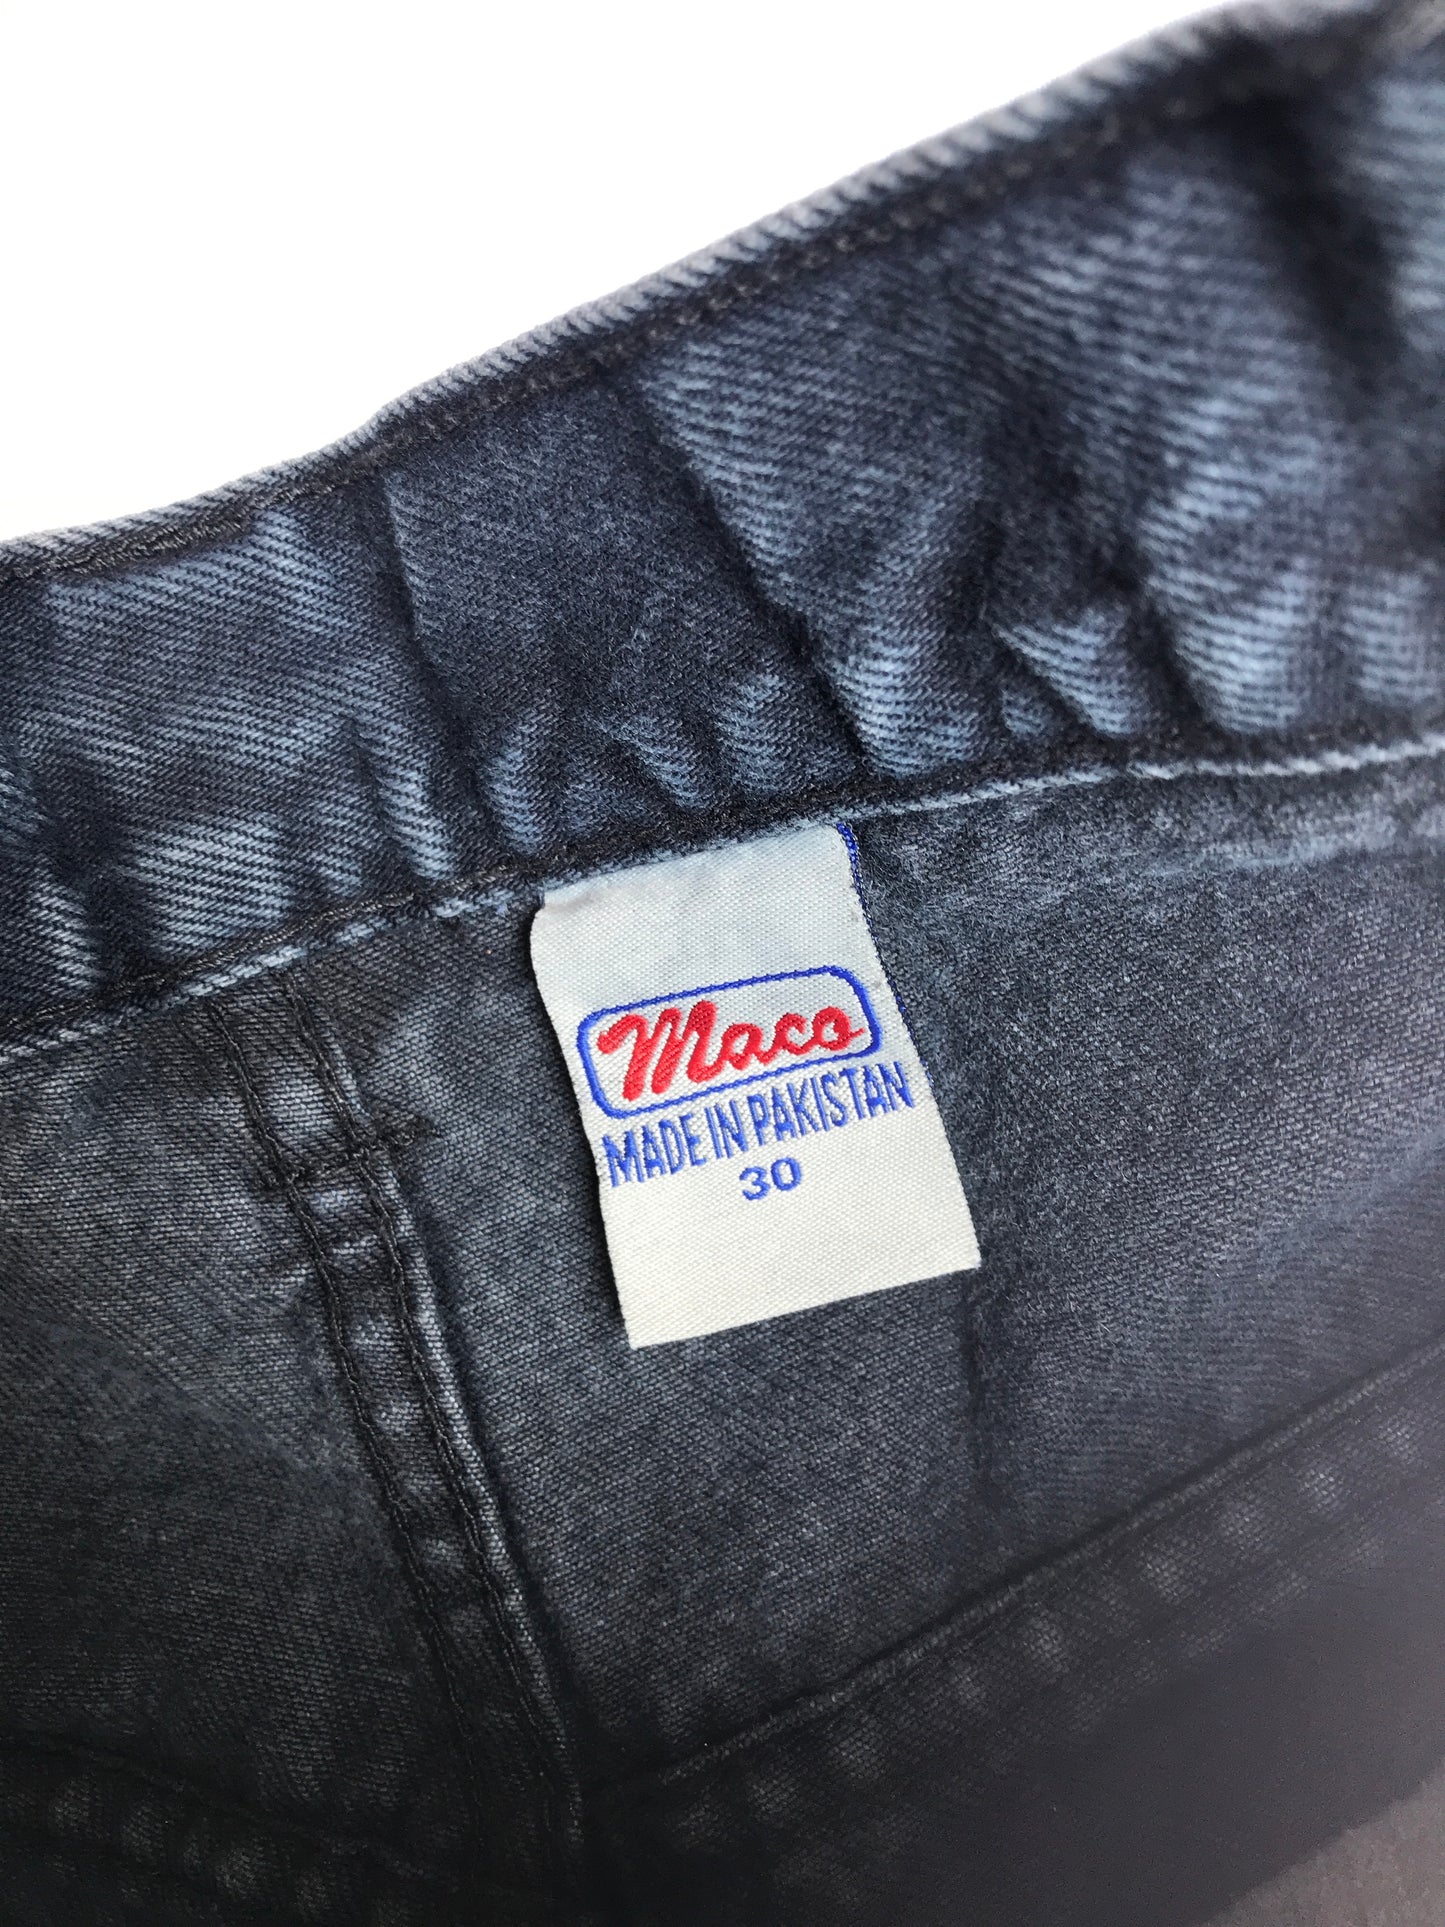 Jeans Maco Vintage